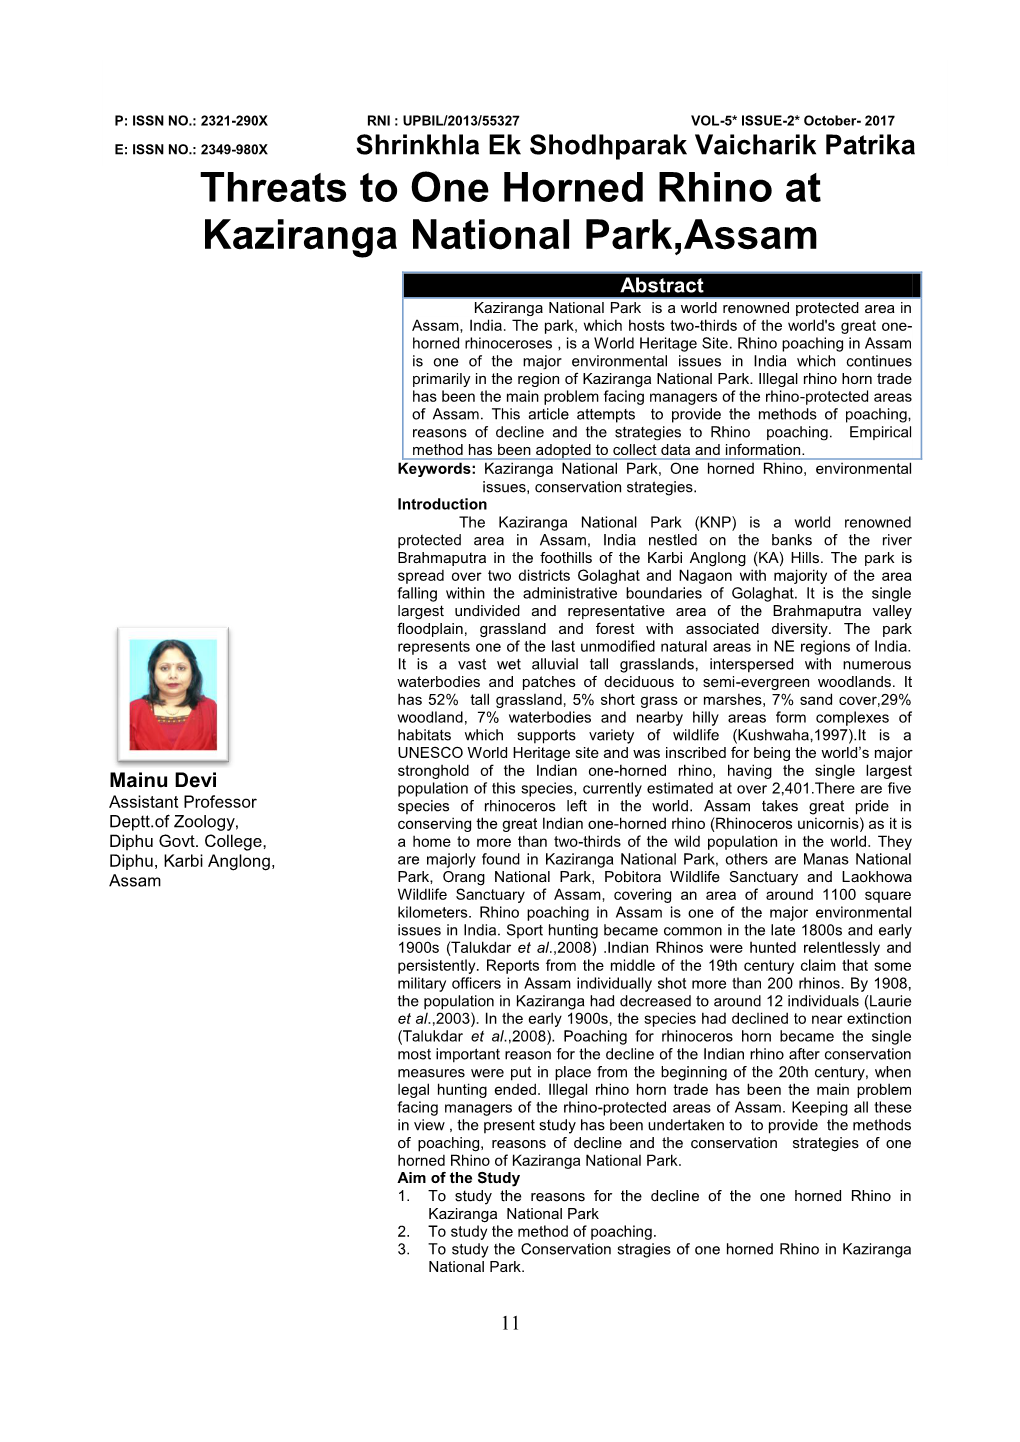 Threats to One Horned Rhino at Kaziranga National Park, Assam